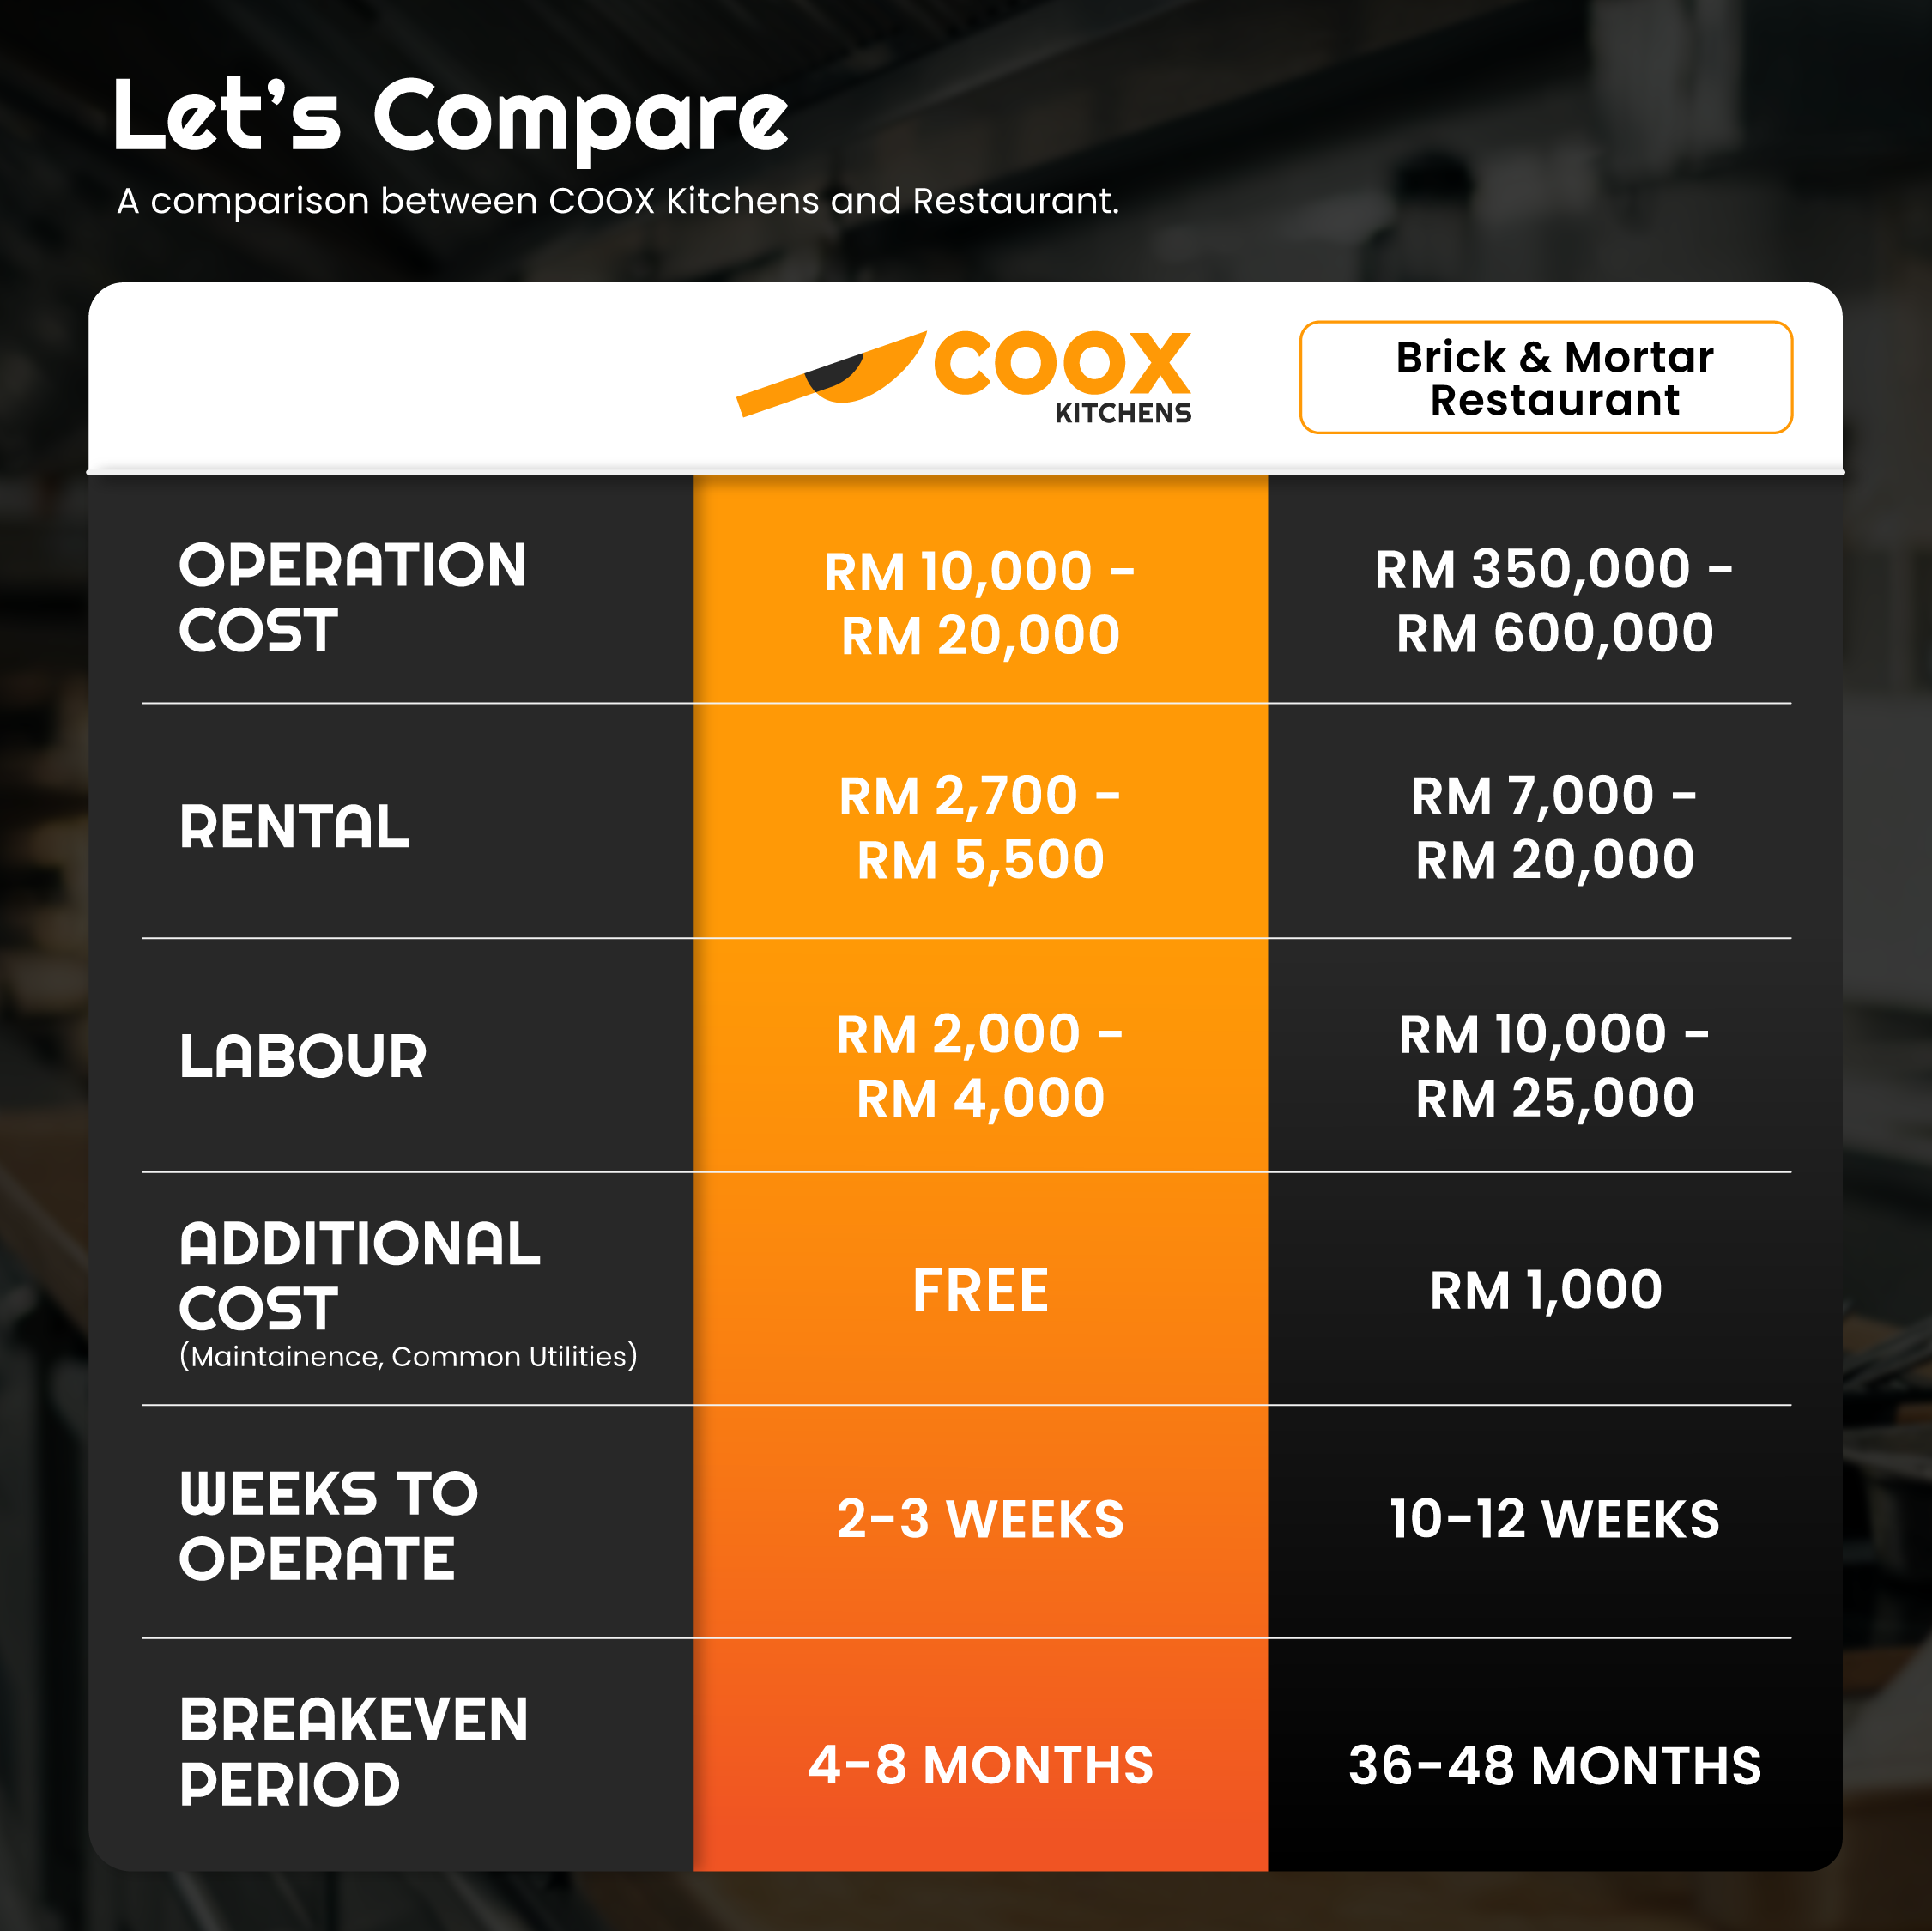 coox-brick-mortar-comparison